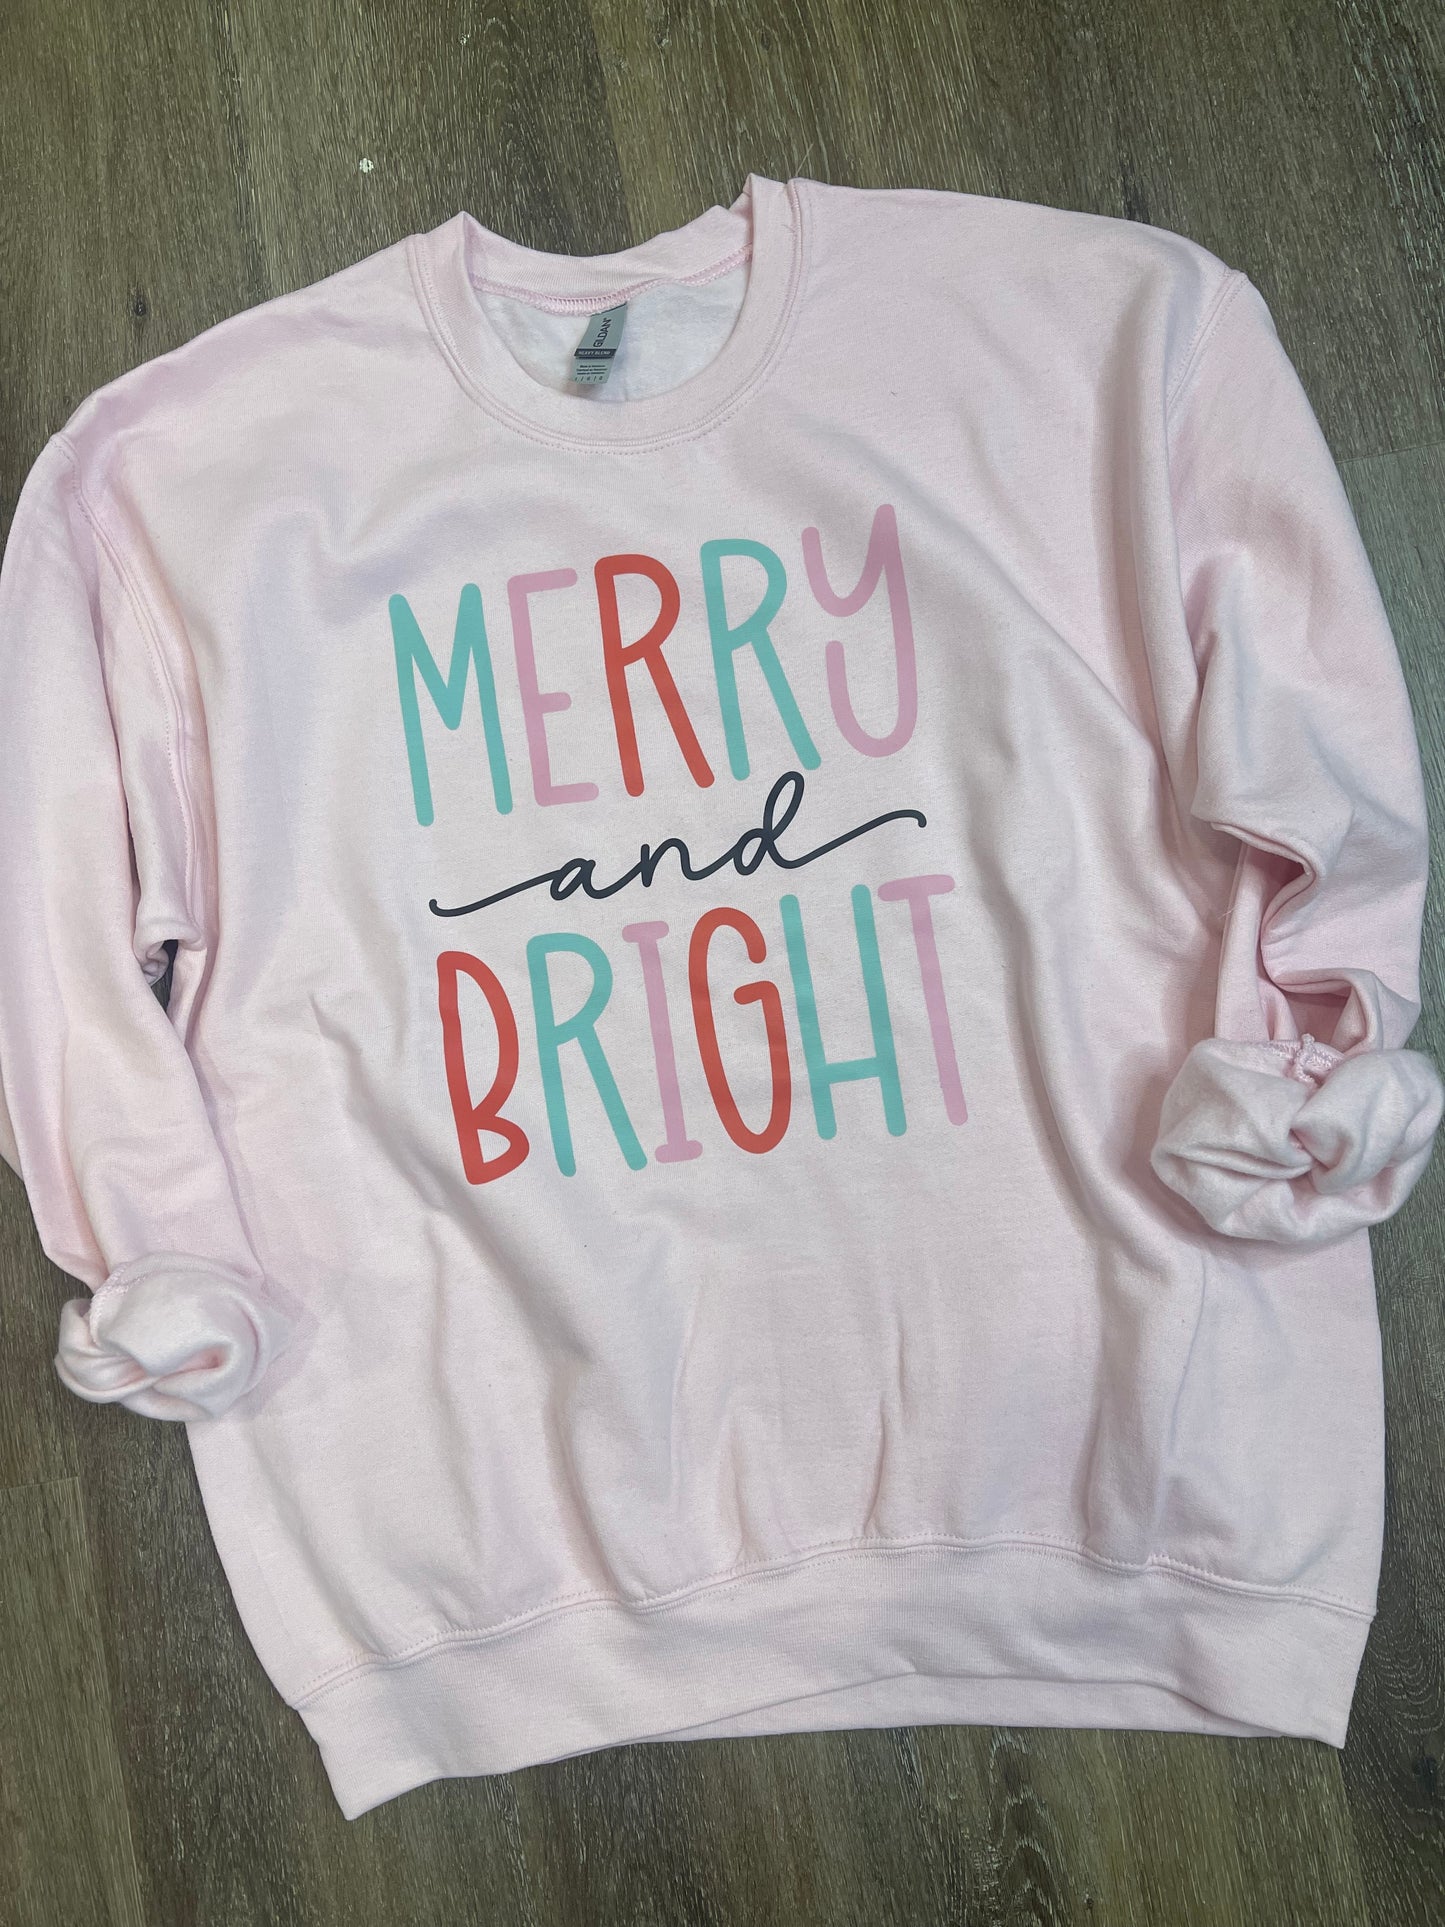 Merry and Bright Tee + Sweatshirt